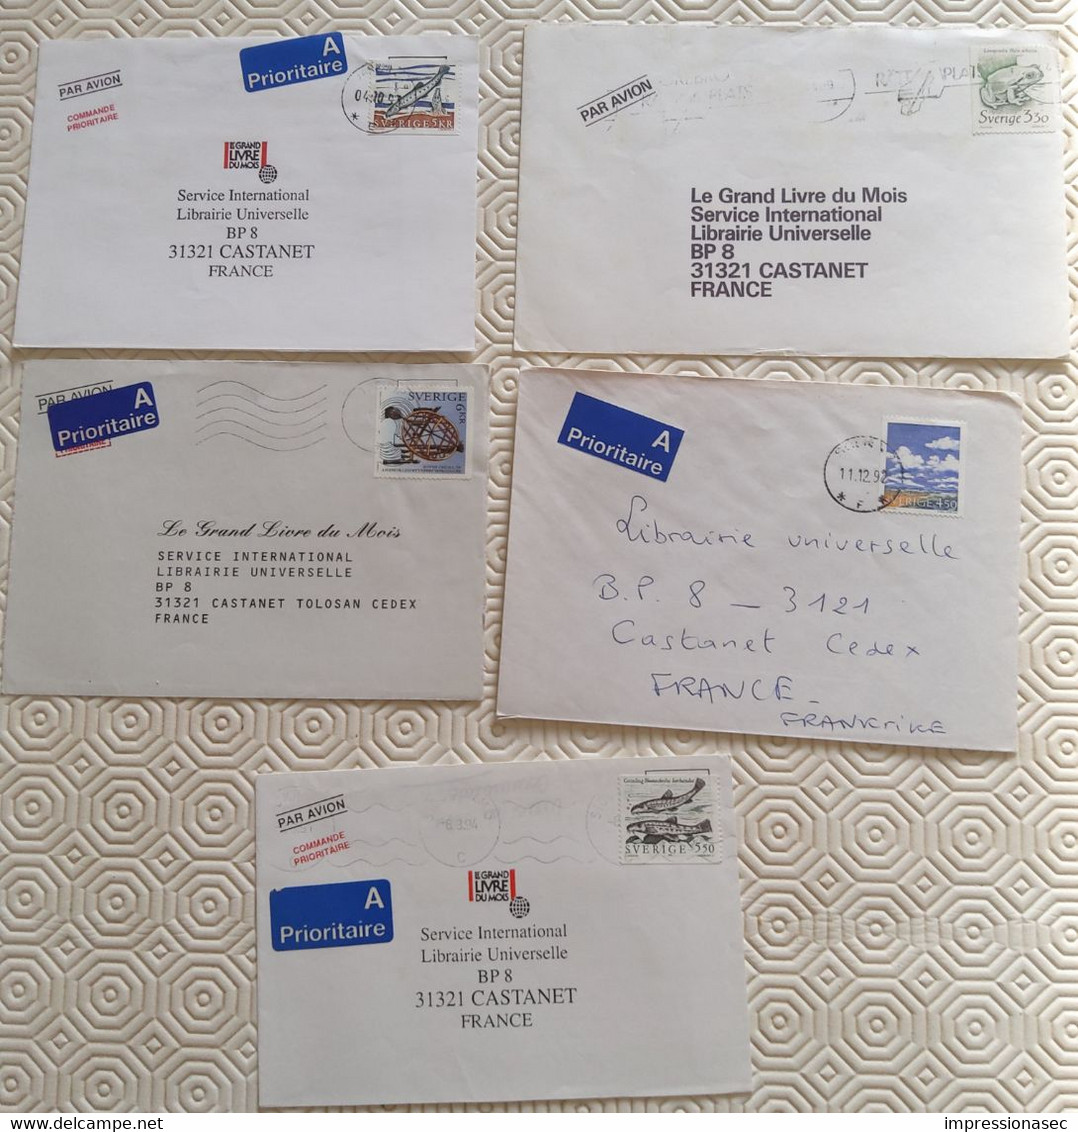 Joli lot de courriers (1000) du monde entier vers la France : années 80-90-2000